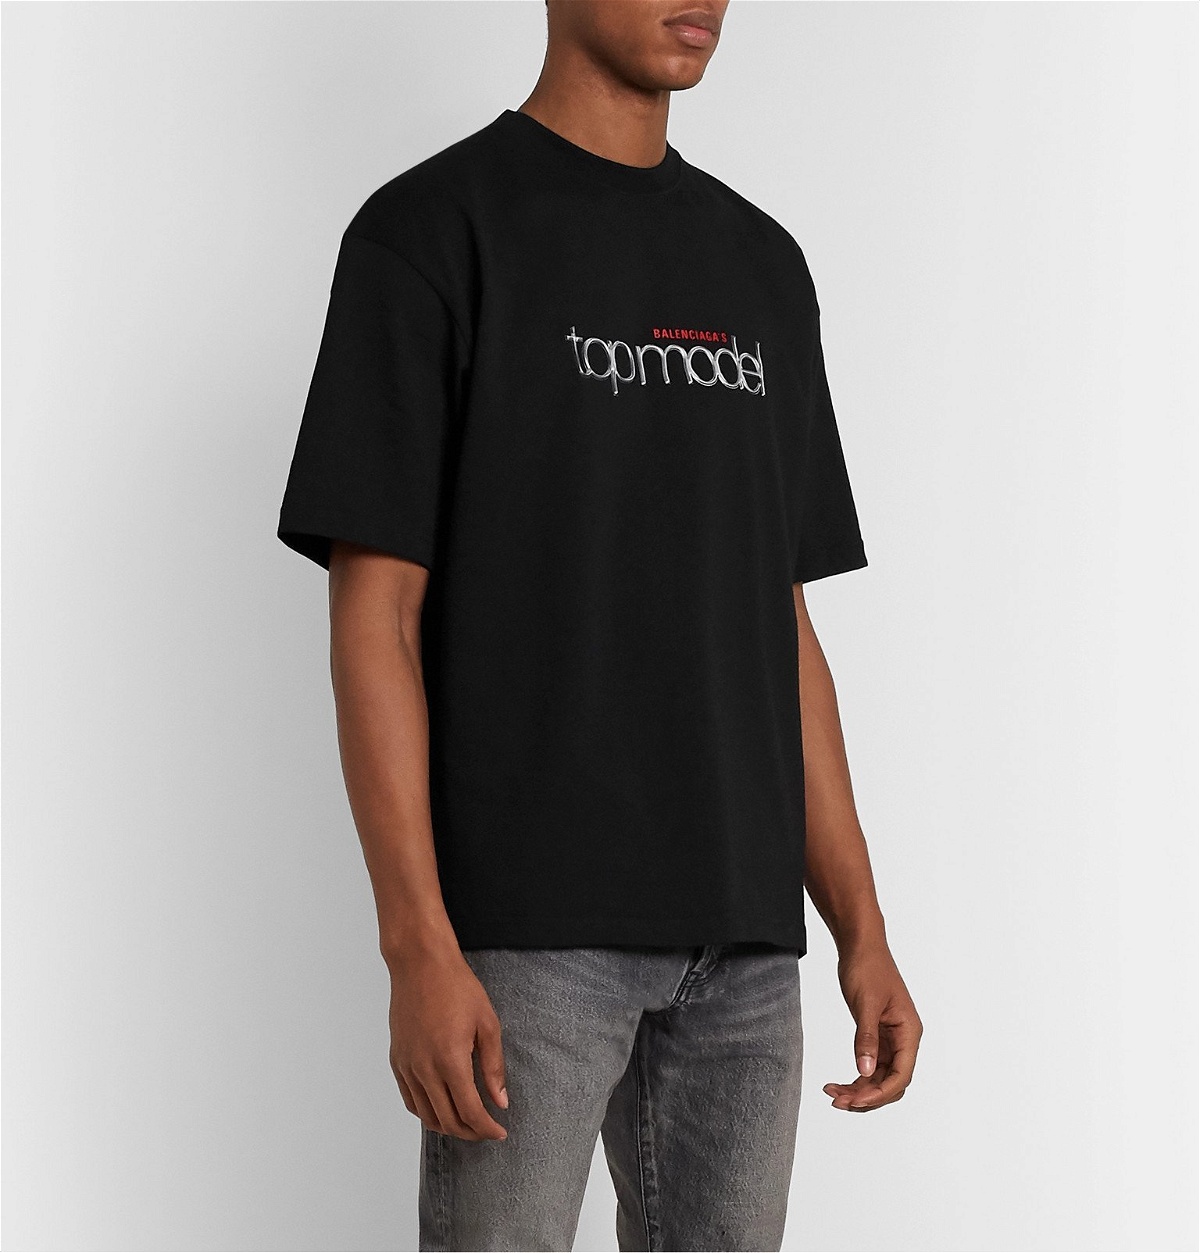 Appliquéd - - Cotton-Jersey Model Logo-Print Balenciaga T-Shirt Top Balenciaga Black